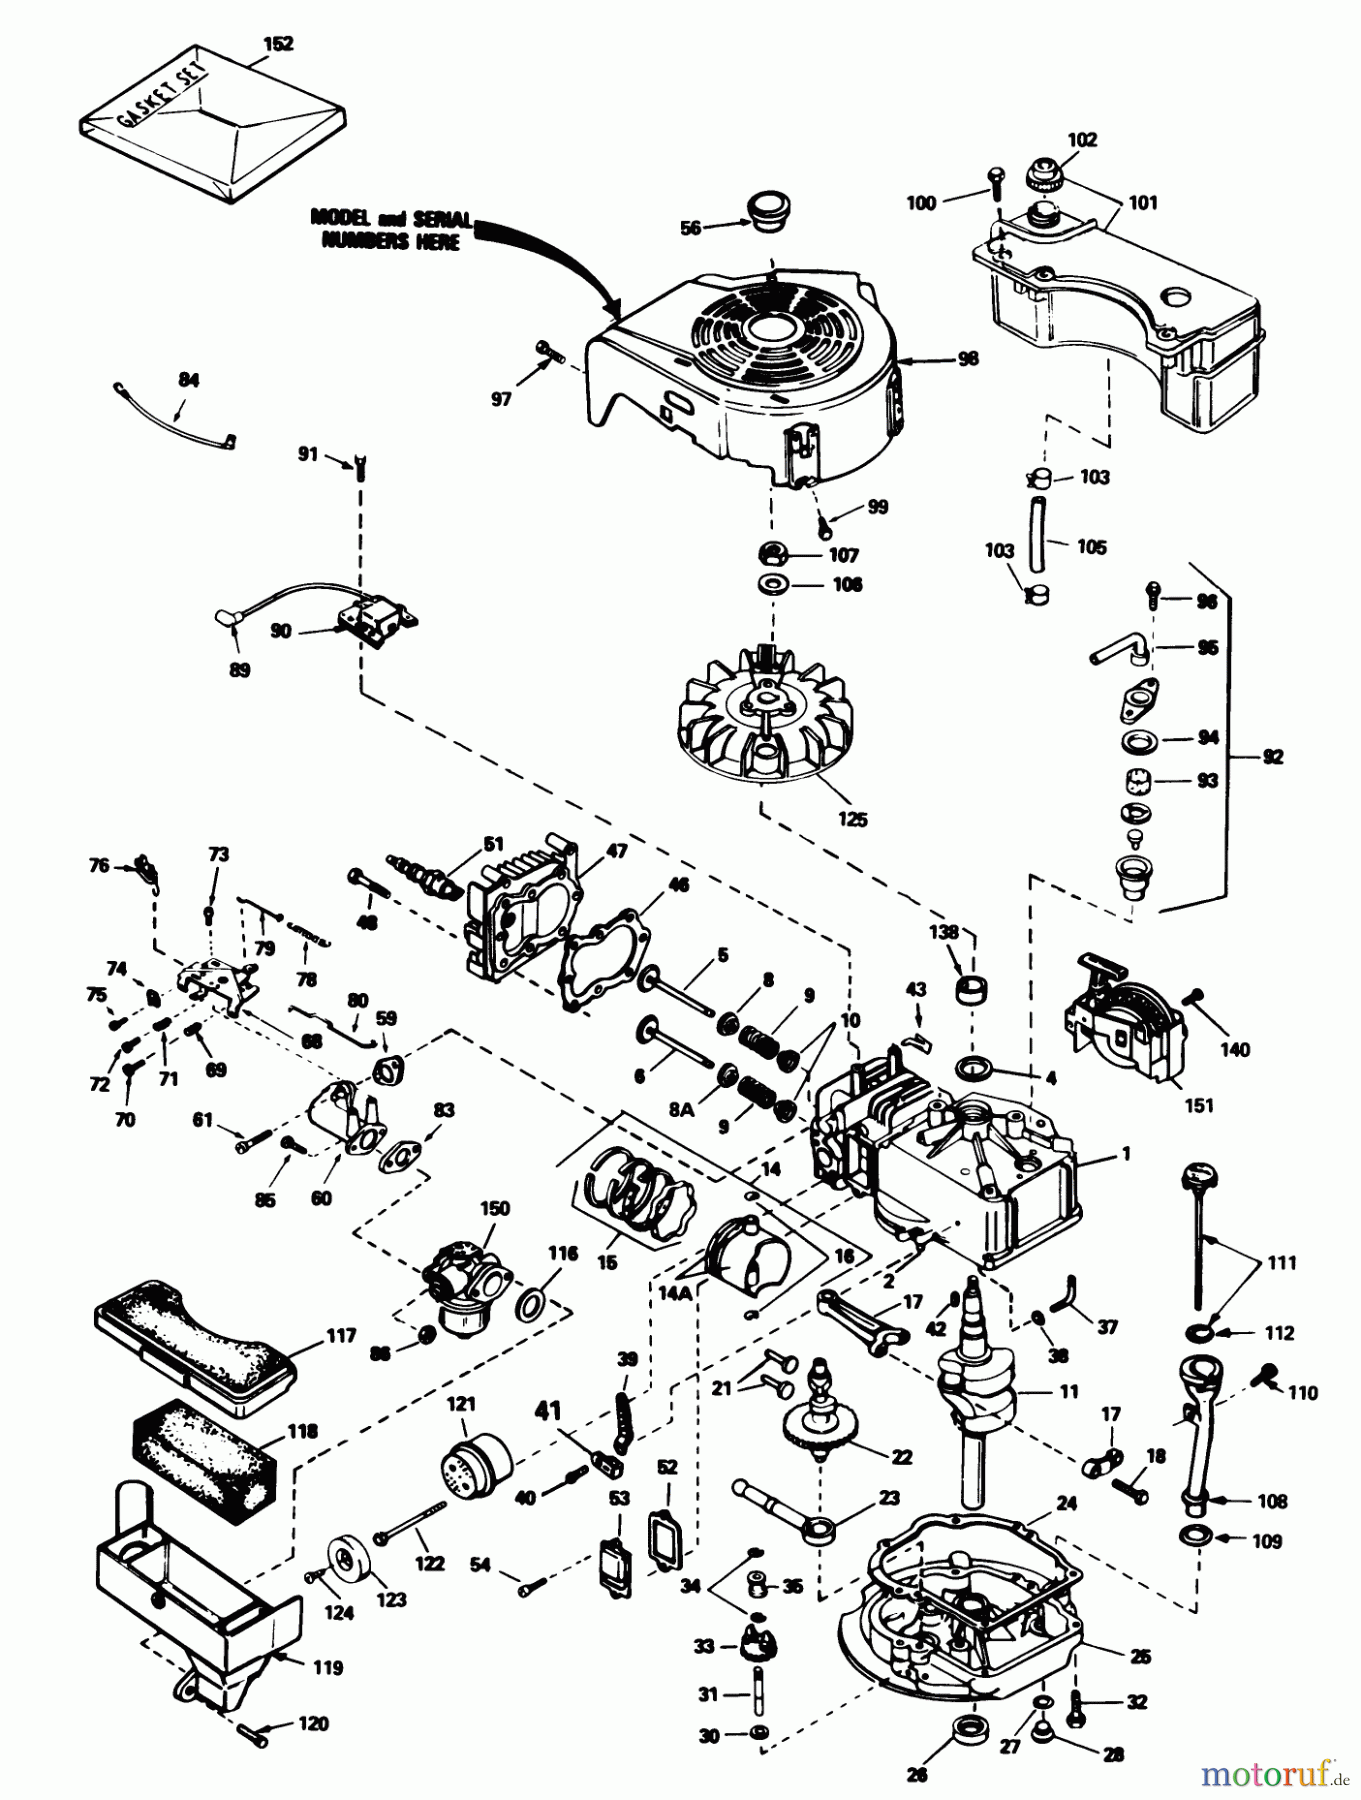  Toro Neu Mowers, Walk-Behind Seite 1 16340C - Toro Lawnmower, 1986 (6000001-6999999) ENGINE TECUMSEH MODEL NO. TVS100-44003